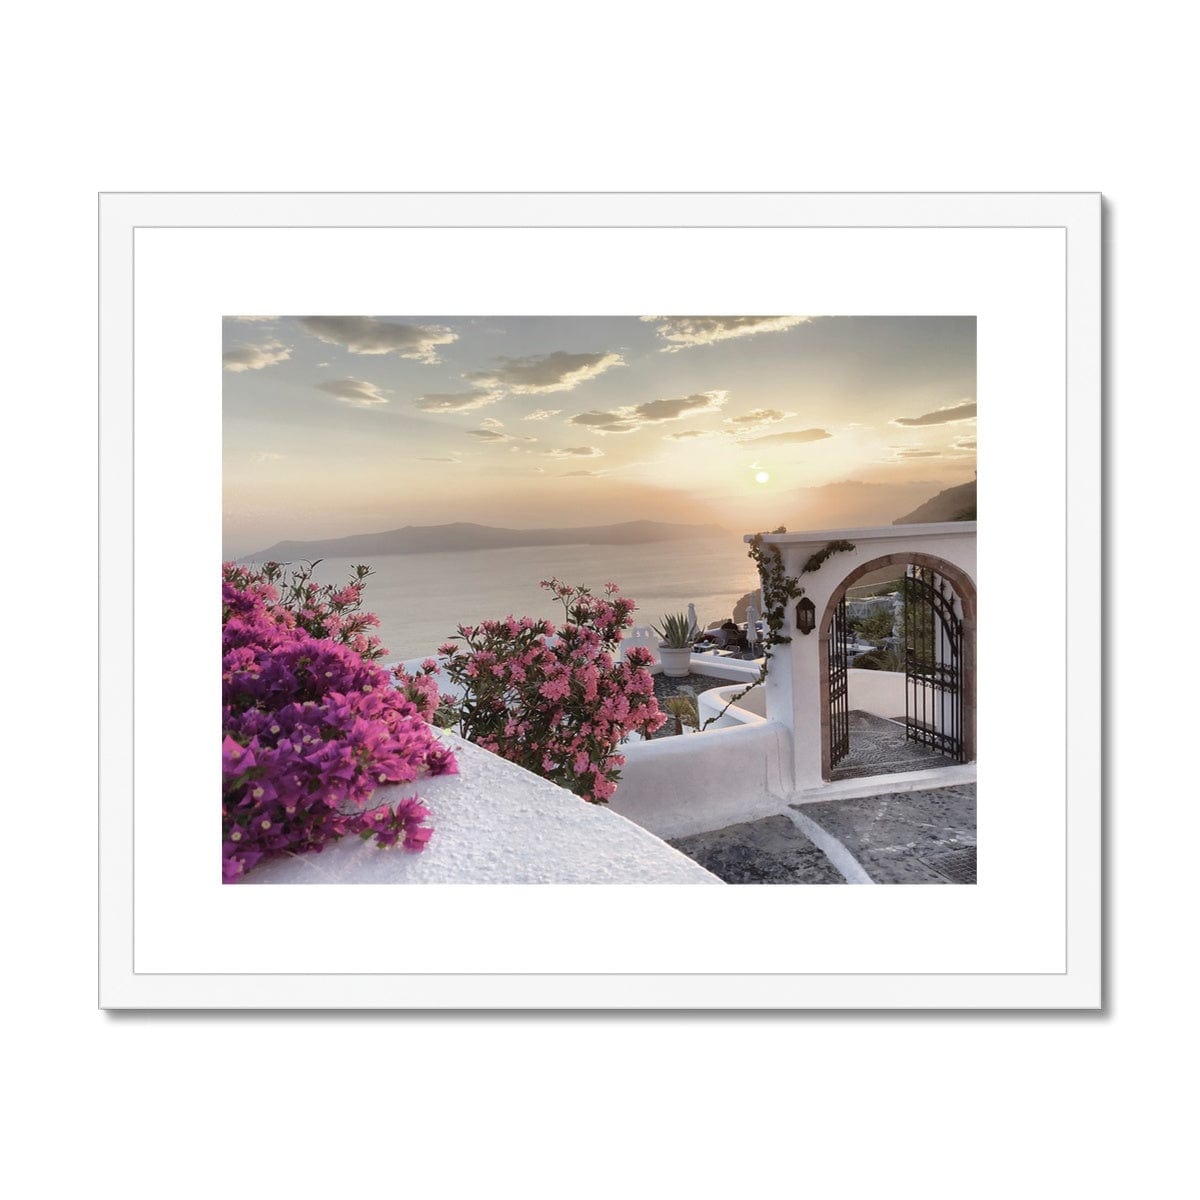 Adam Davies Framed 20"x16" / White Frame Santorini Sunset Framed & Mounted Print